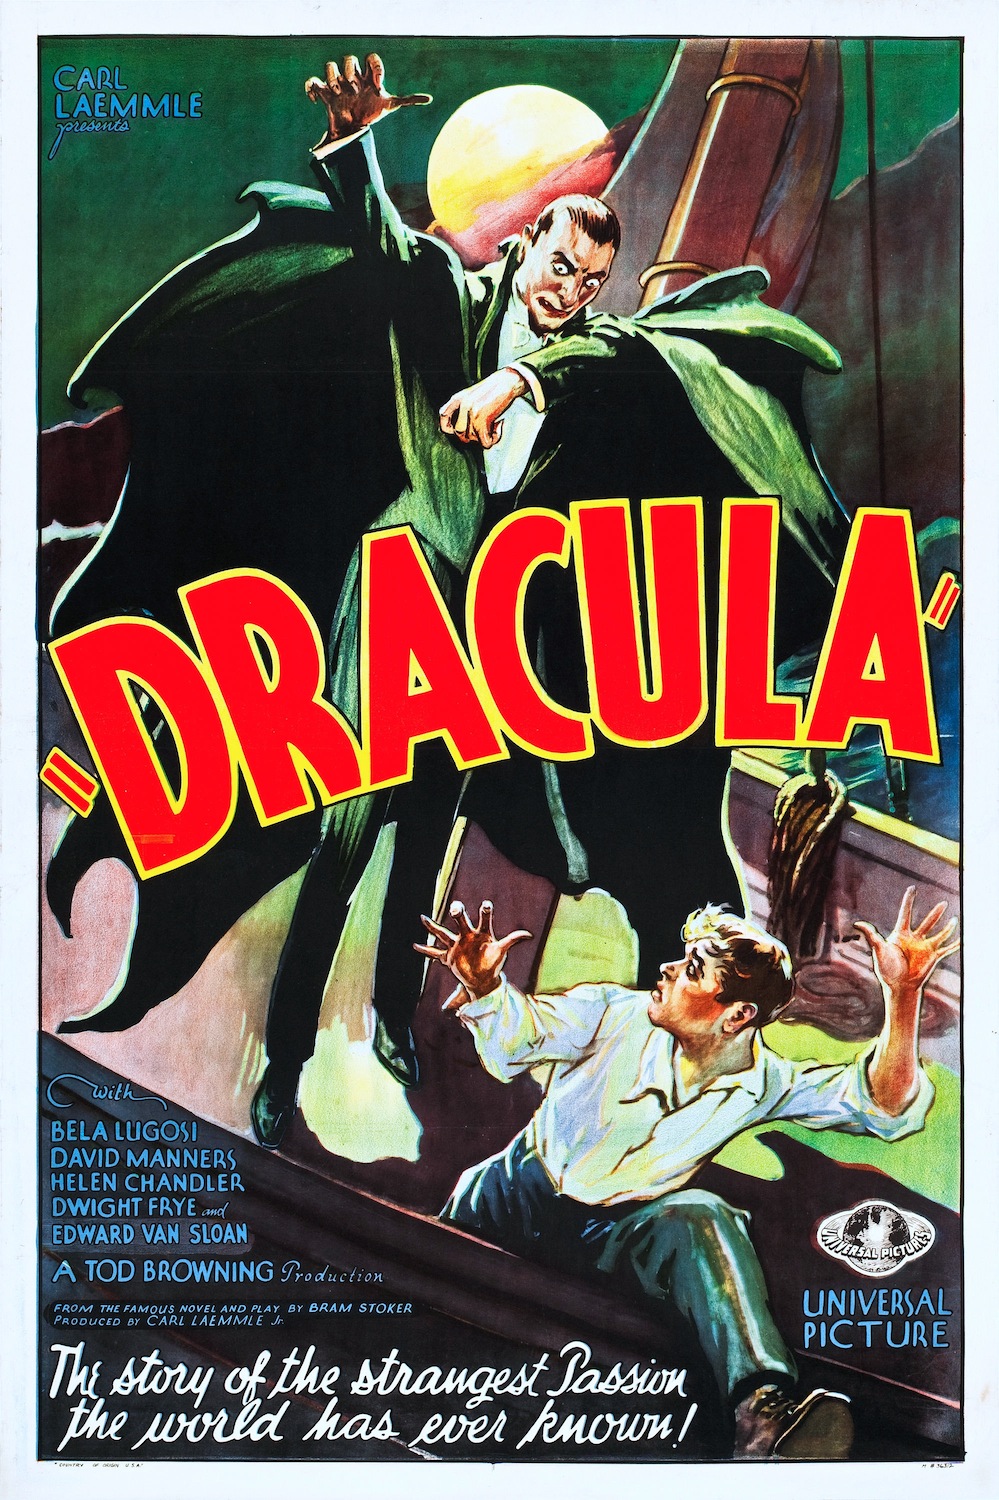 Dracula 1931 Digital Movie Poster Print Digital Download Horror Movie Bela Lugosi Edward Van Sloan David Manners Dwight Frye Helen Chandler